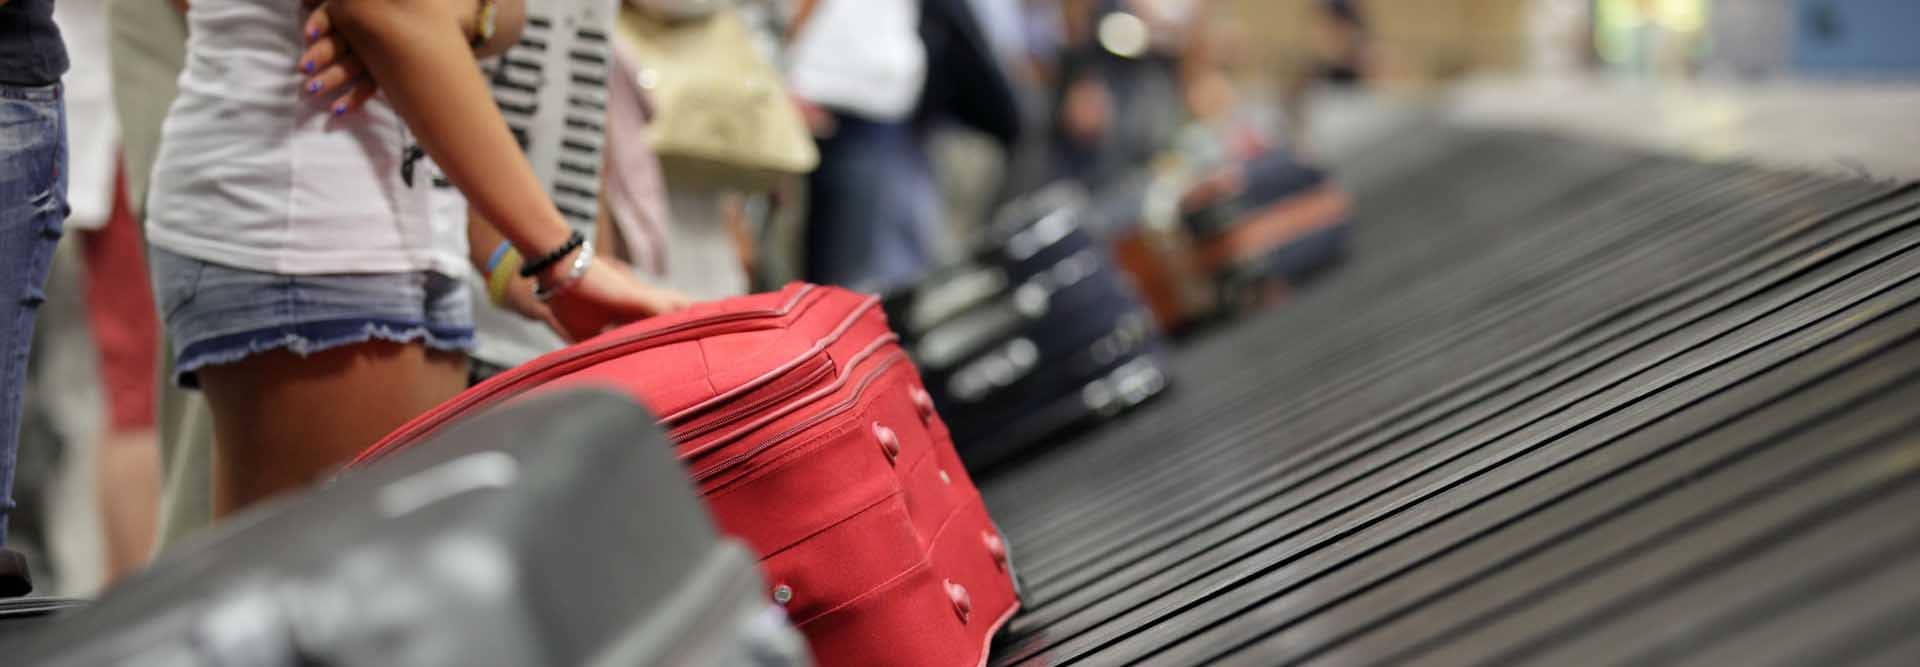 imagen maleta en cinta de equipaje de aeropuerto